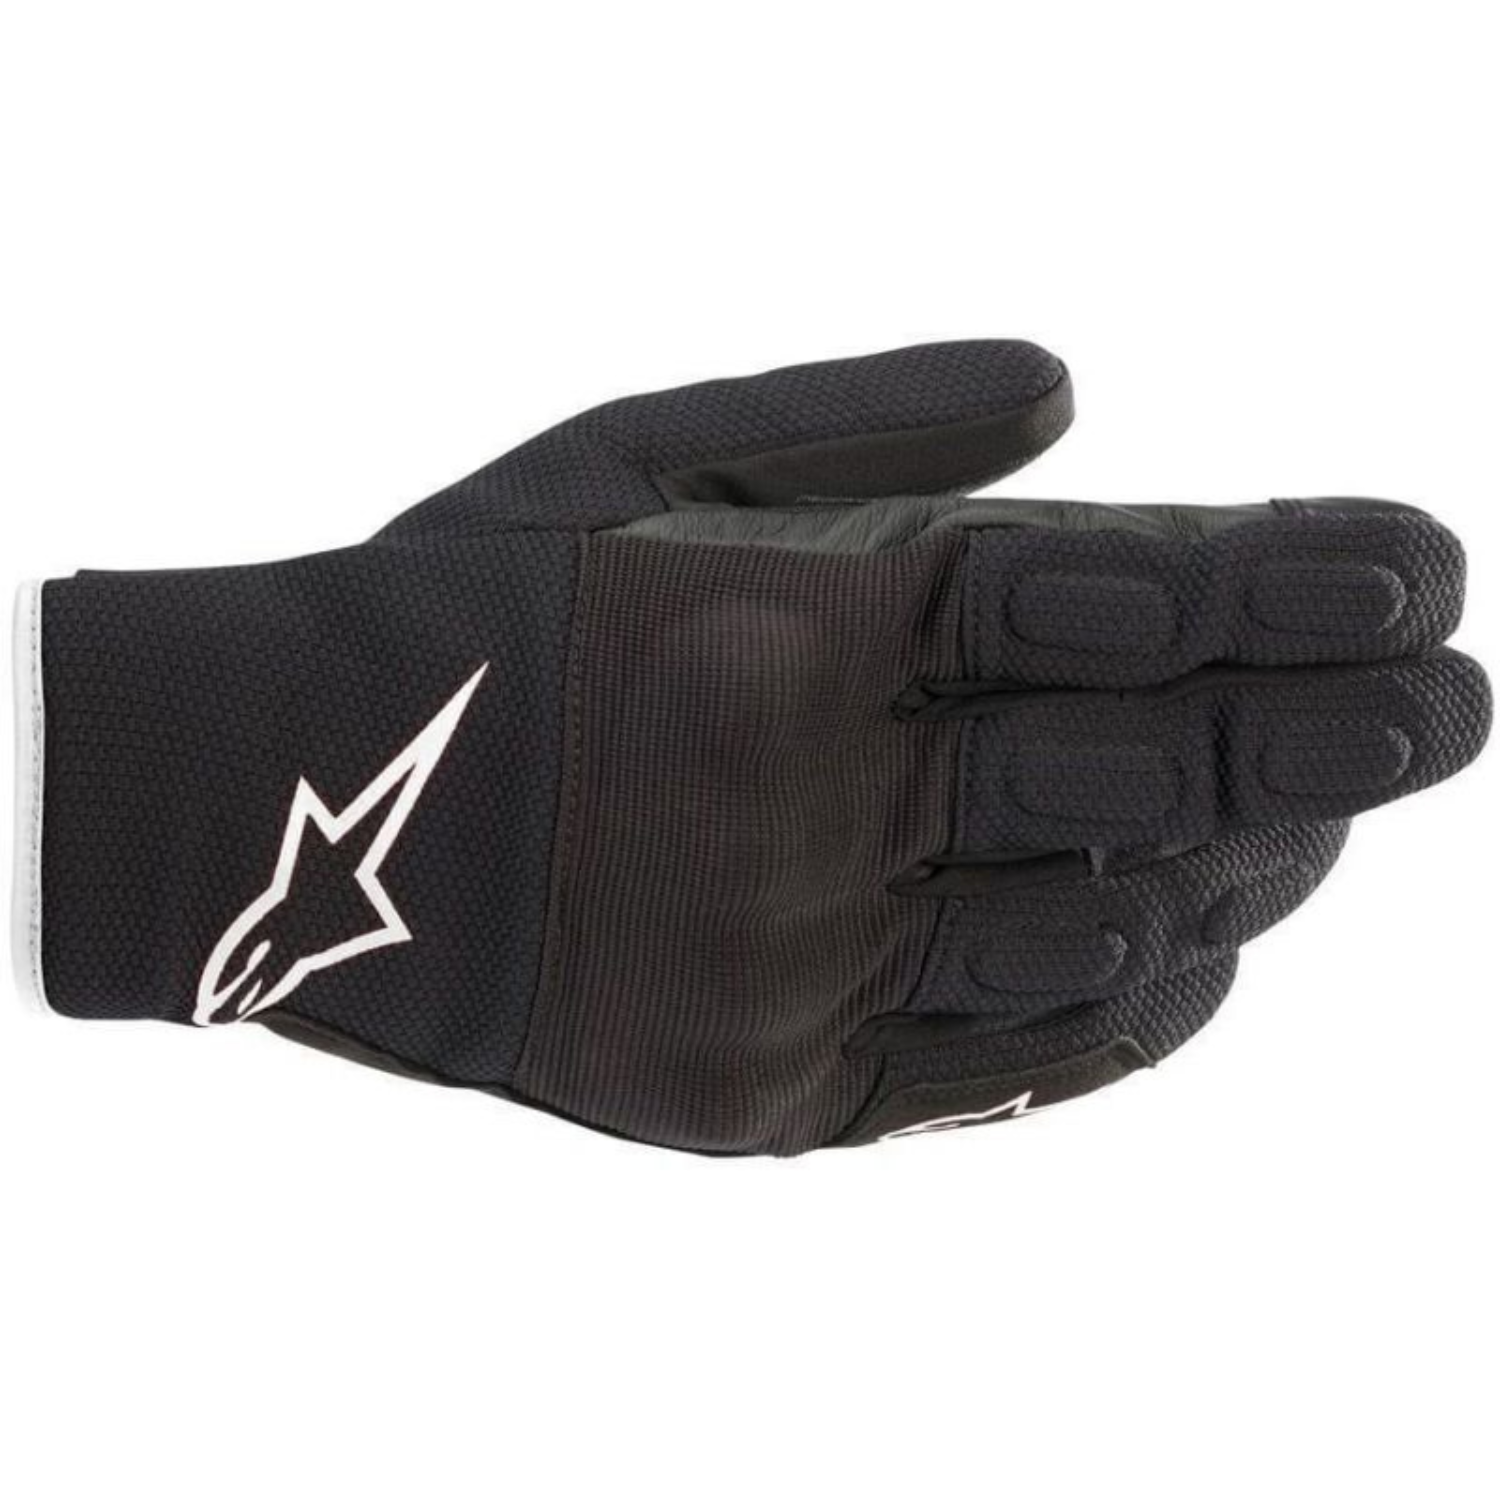 Image of Alpinestars S Max Drystar Gloves Black White Größe XL